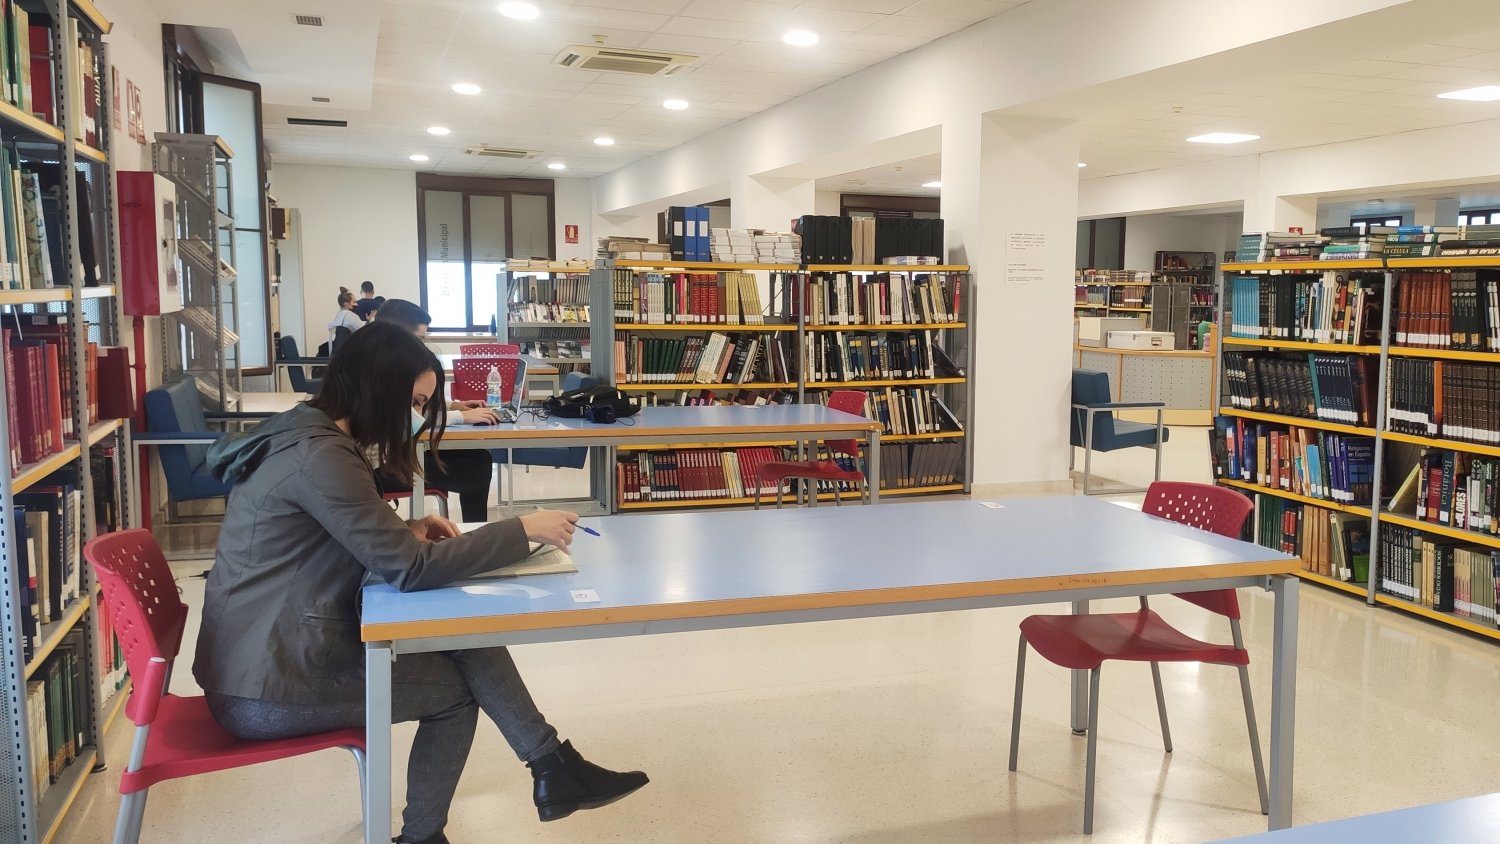 Estepona amplía los fondos de la Biblioteca Municipal con más de 2.500 libros durante 2020